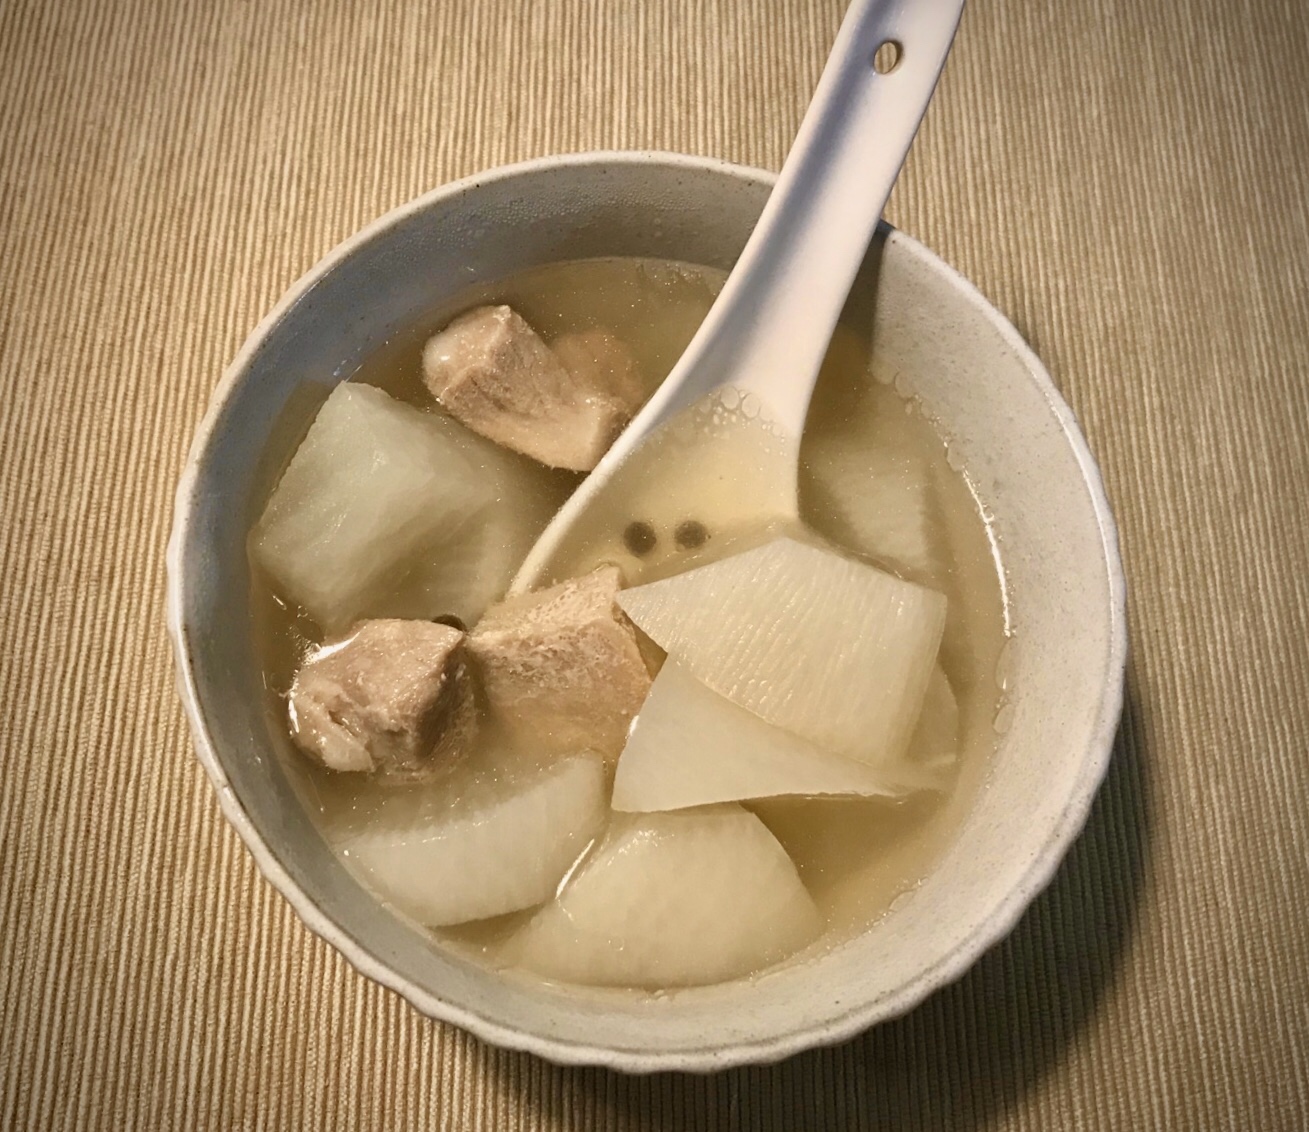 电饭锅&炒锅篇一：最长黑夜里的温暖-萝卜炖肉汤的做法